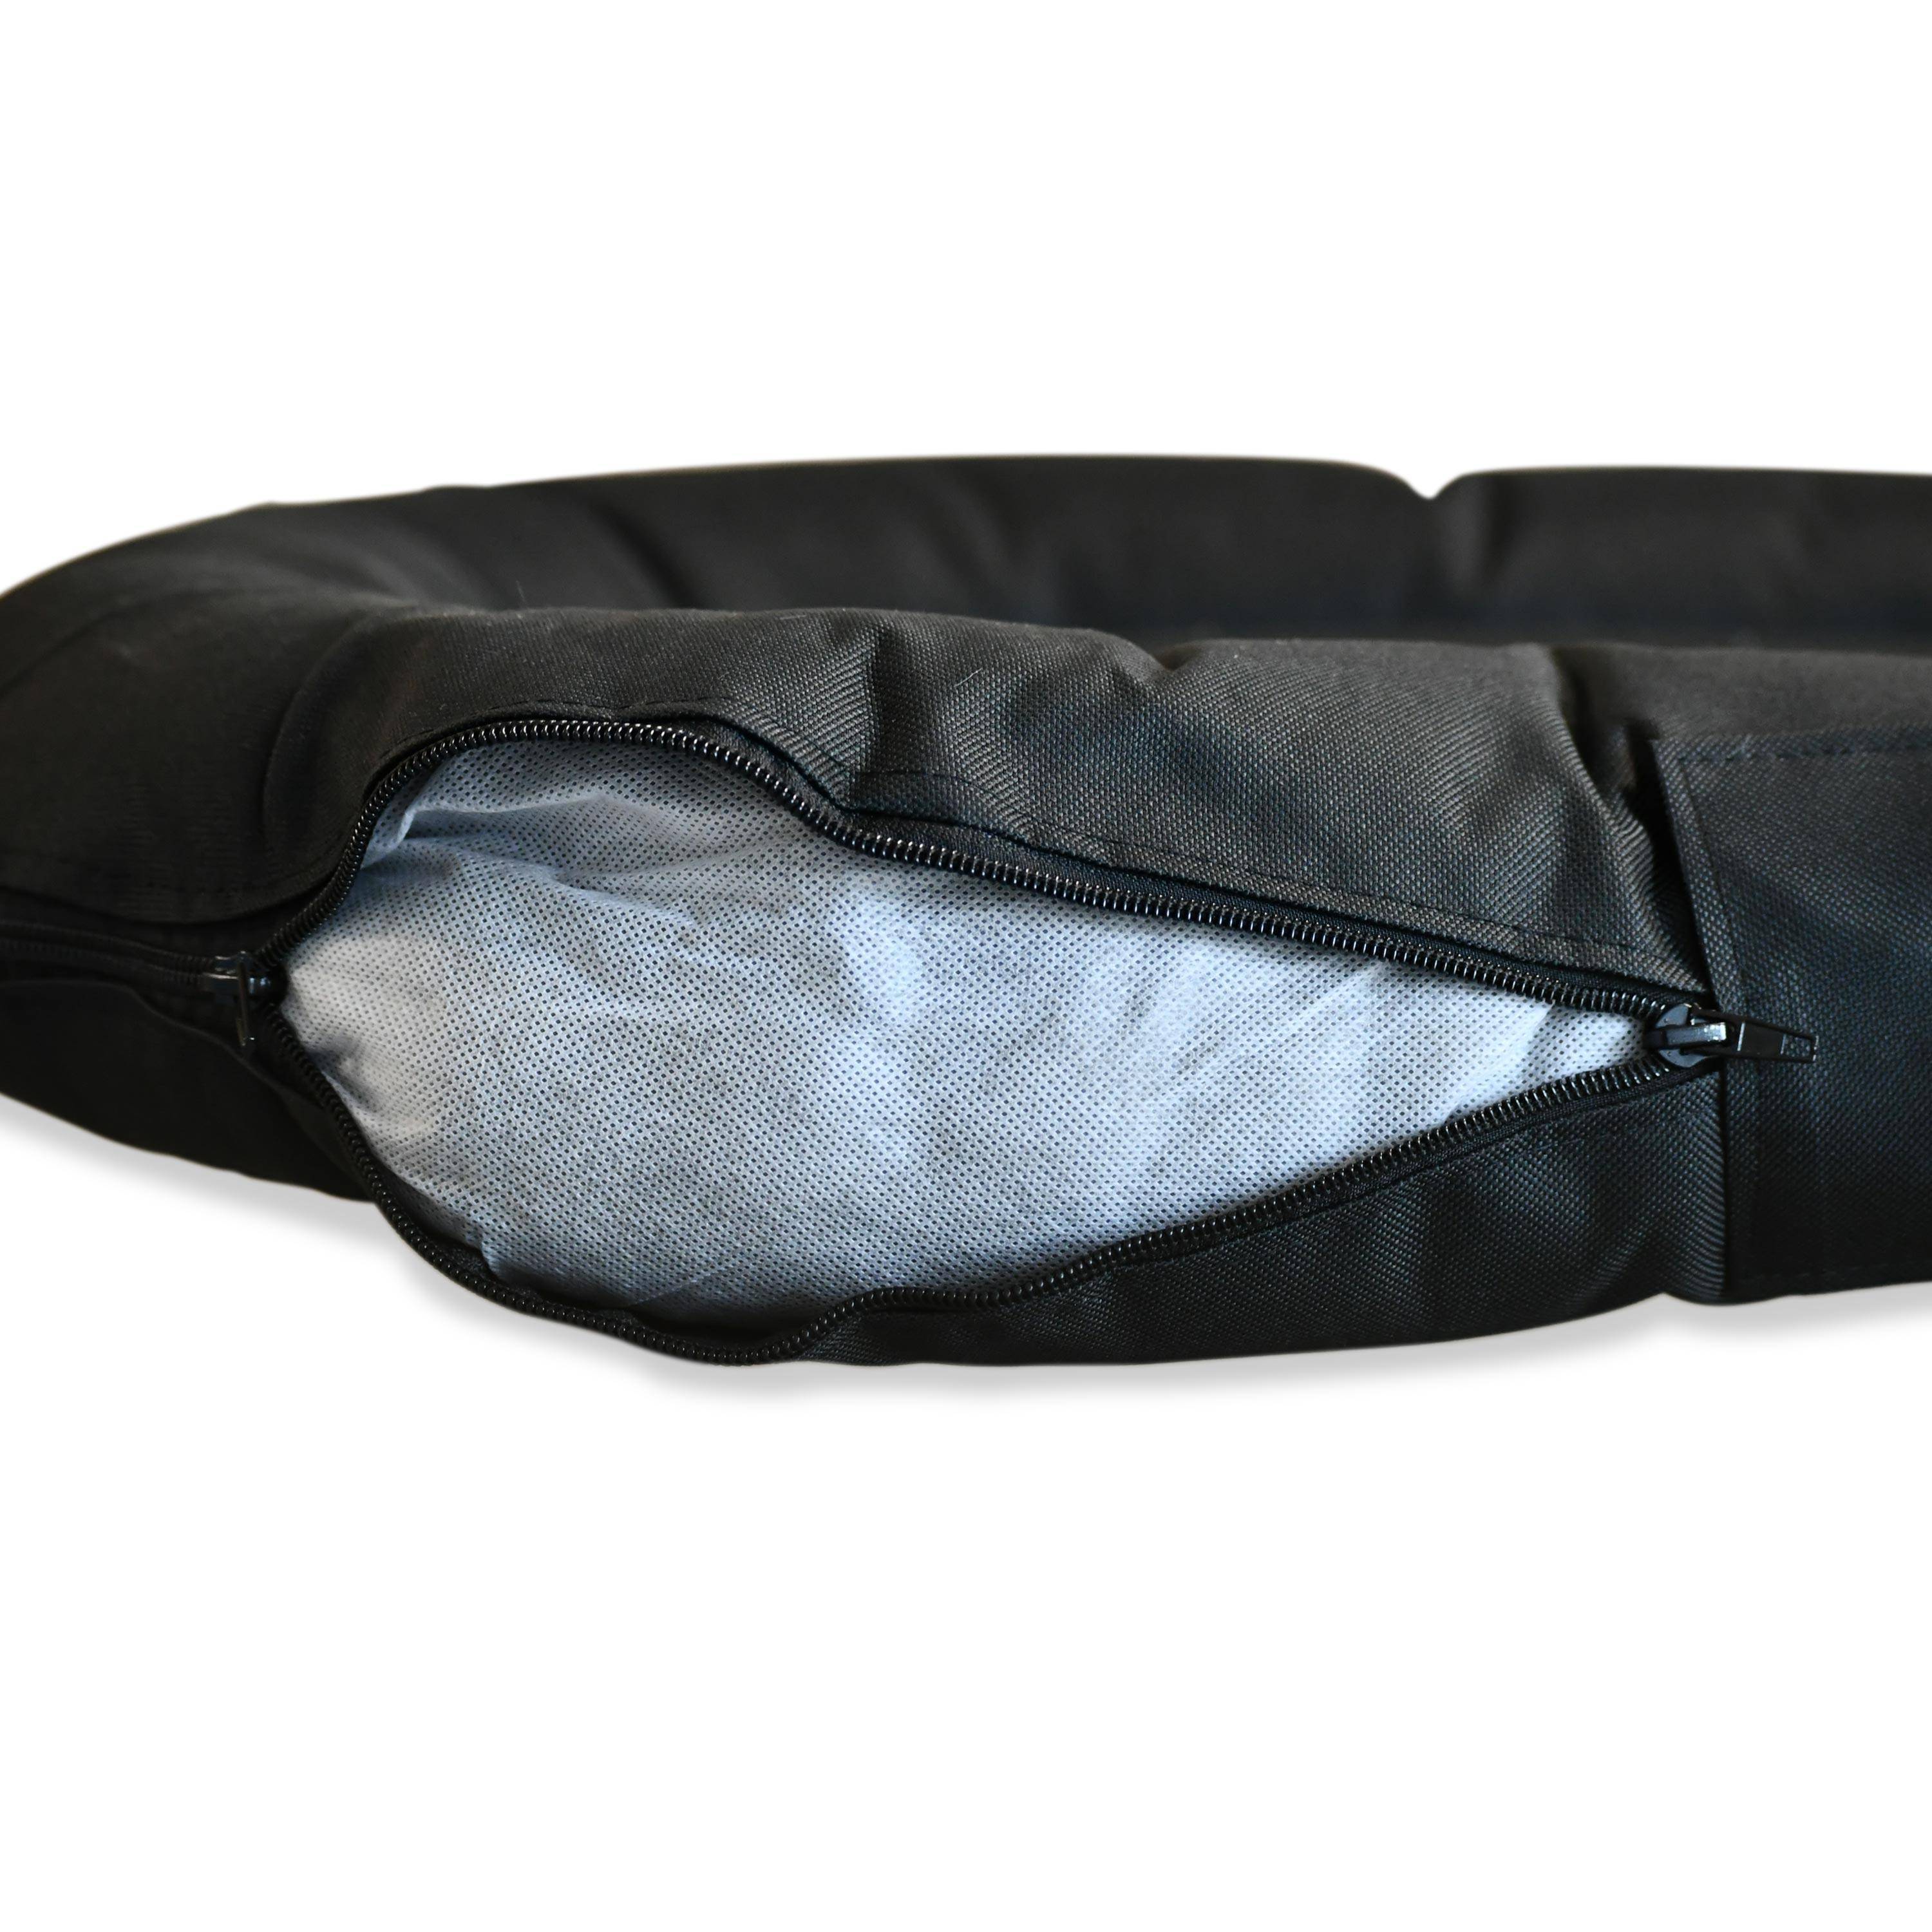 Stoffkissen Schwarz 100 x 70 cm, ovale Form mit abnehmbarem Bezug für mittelgroße Hunde, Größe M Photo6